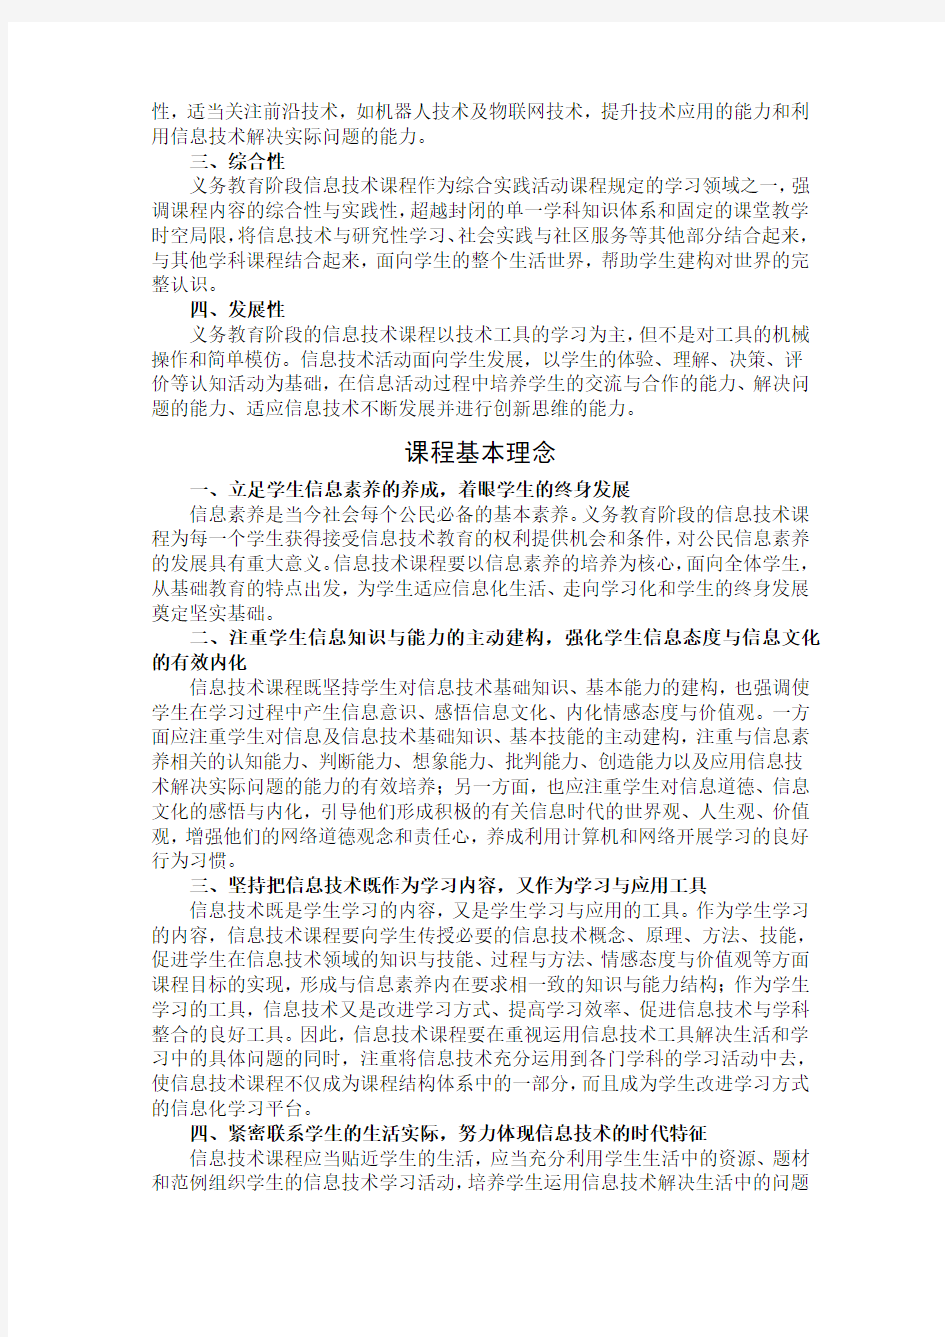 江苏省义务教育信息技术课程指导纲要(2013年修订)